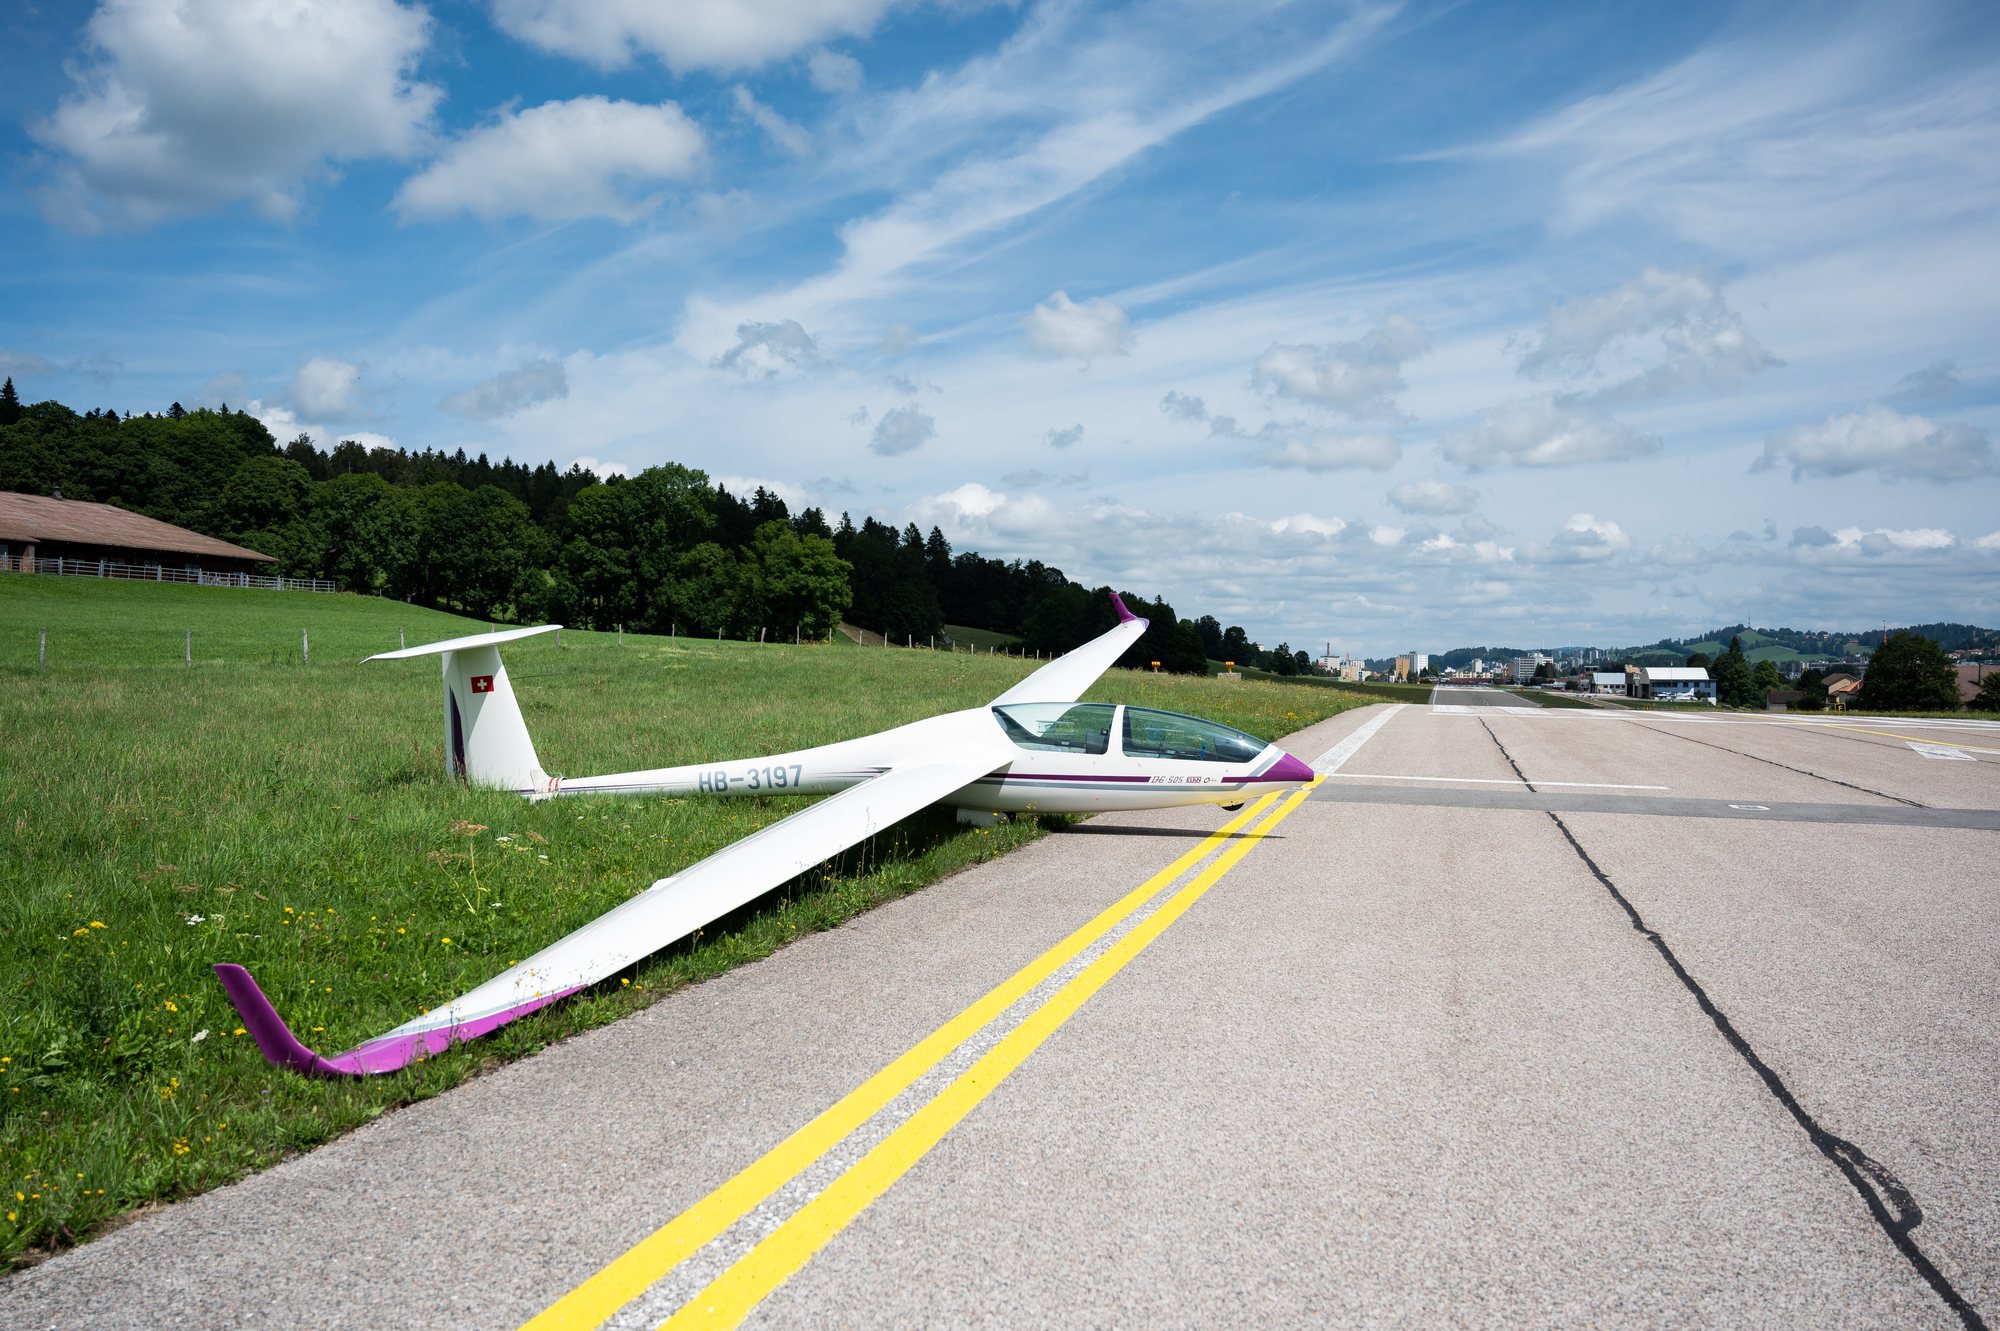 L'Aéro-club de La Chaux-de-Fonds aimerait faire voler plus souvent ses planeurs.